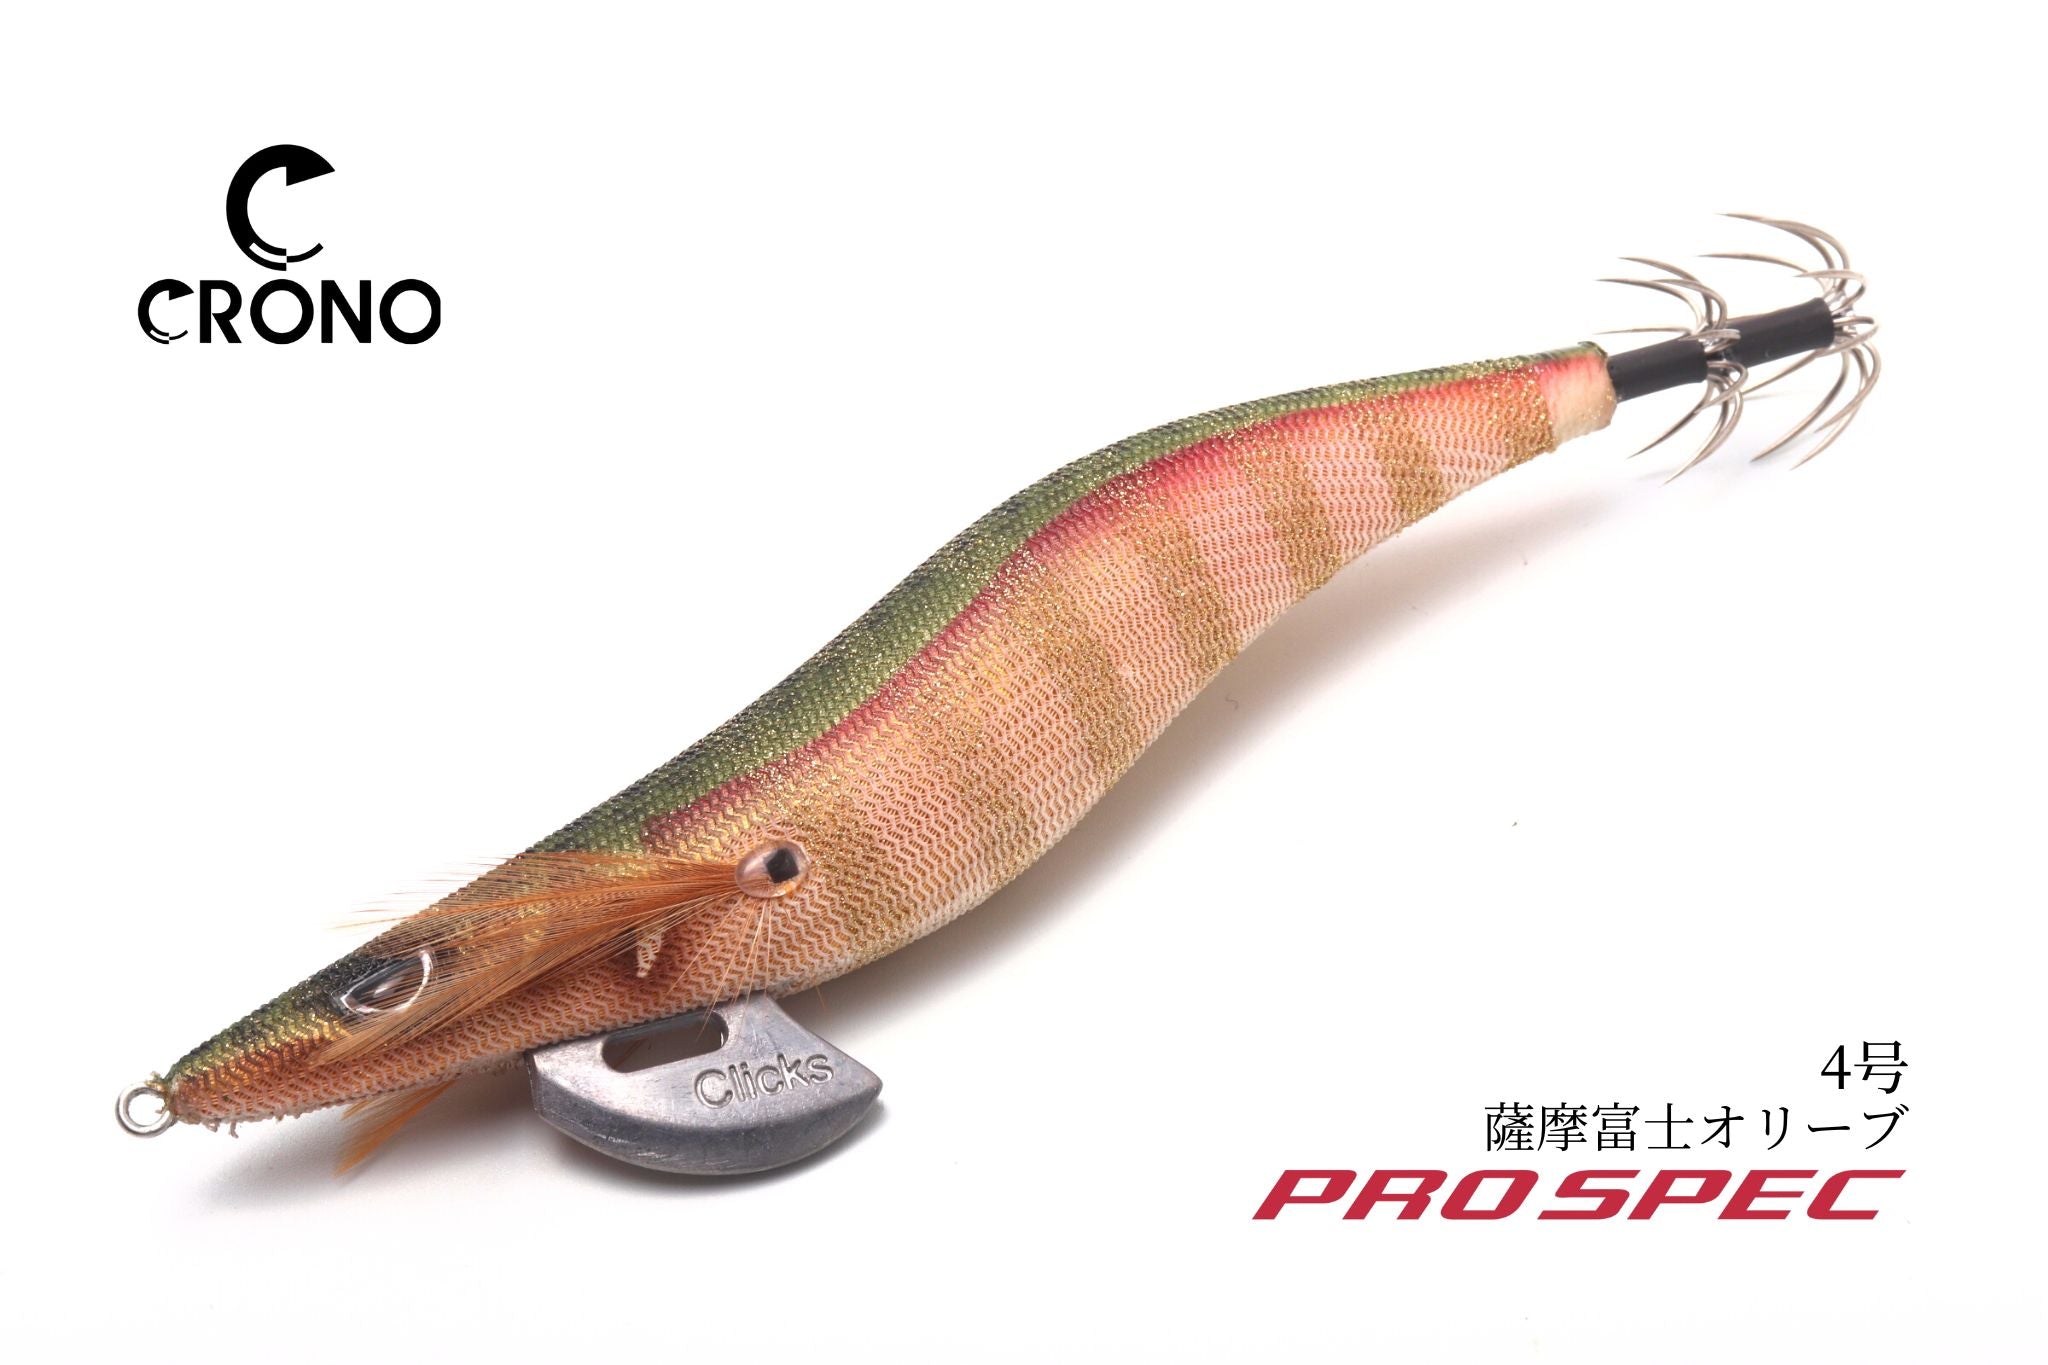 クリックス プロスペック | 宮崎市の釣具店 FISHING BASE PLAISANCE